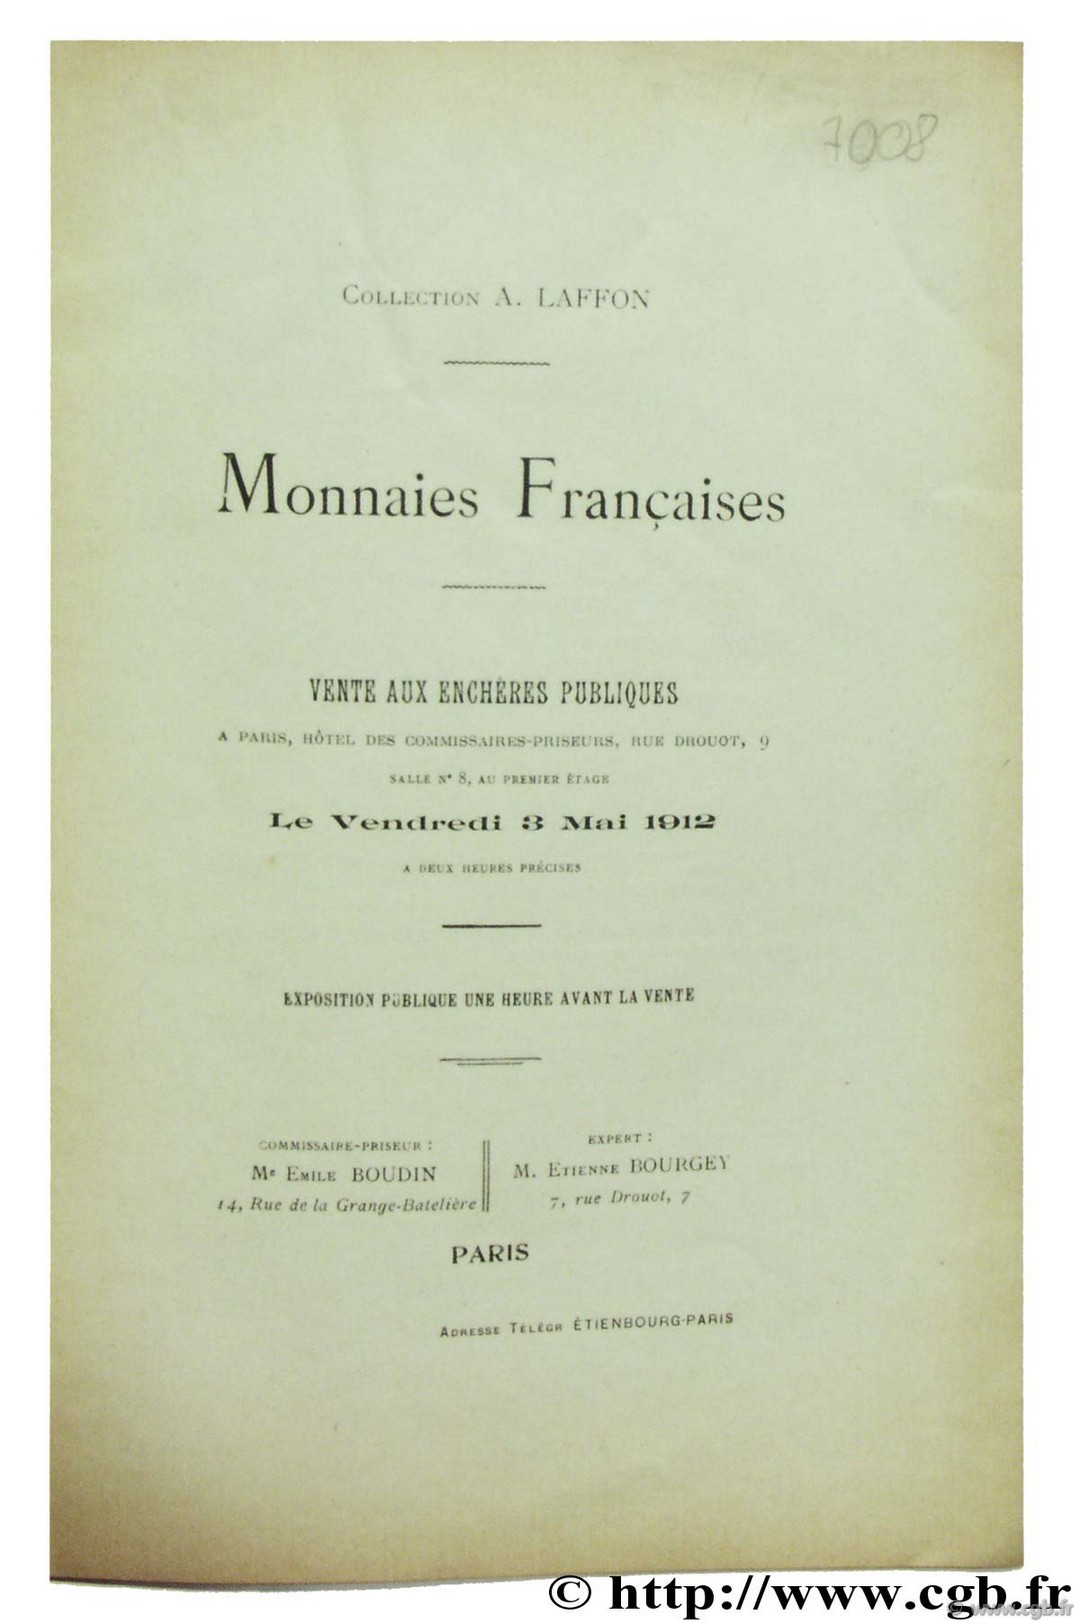 Monnaies Françaises - Collection A. Laffon BOURGEY É.